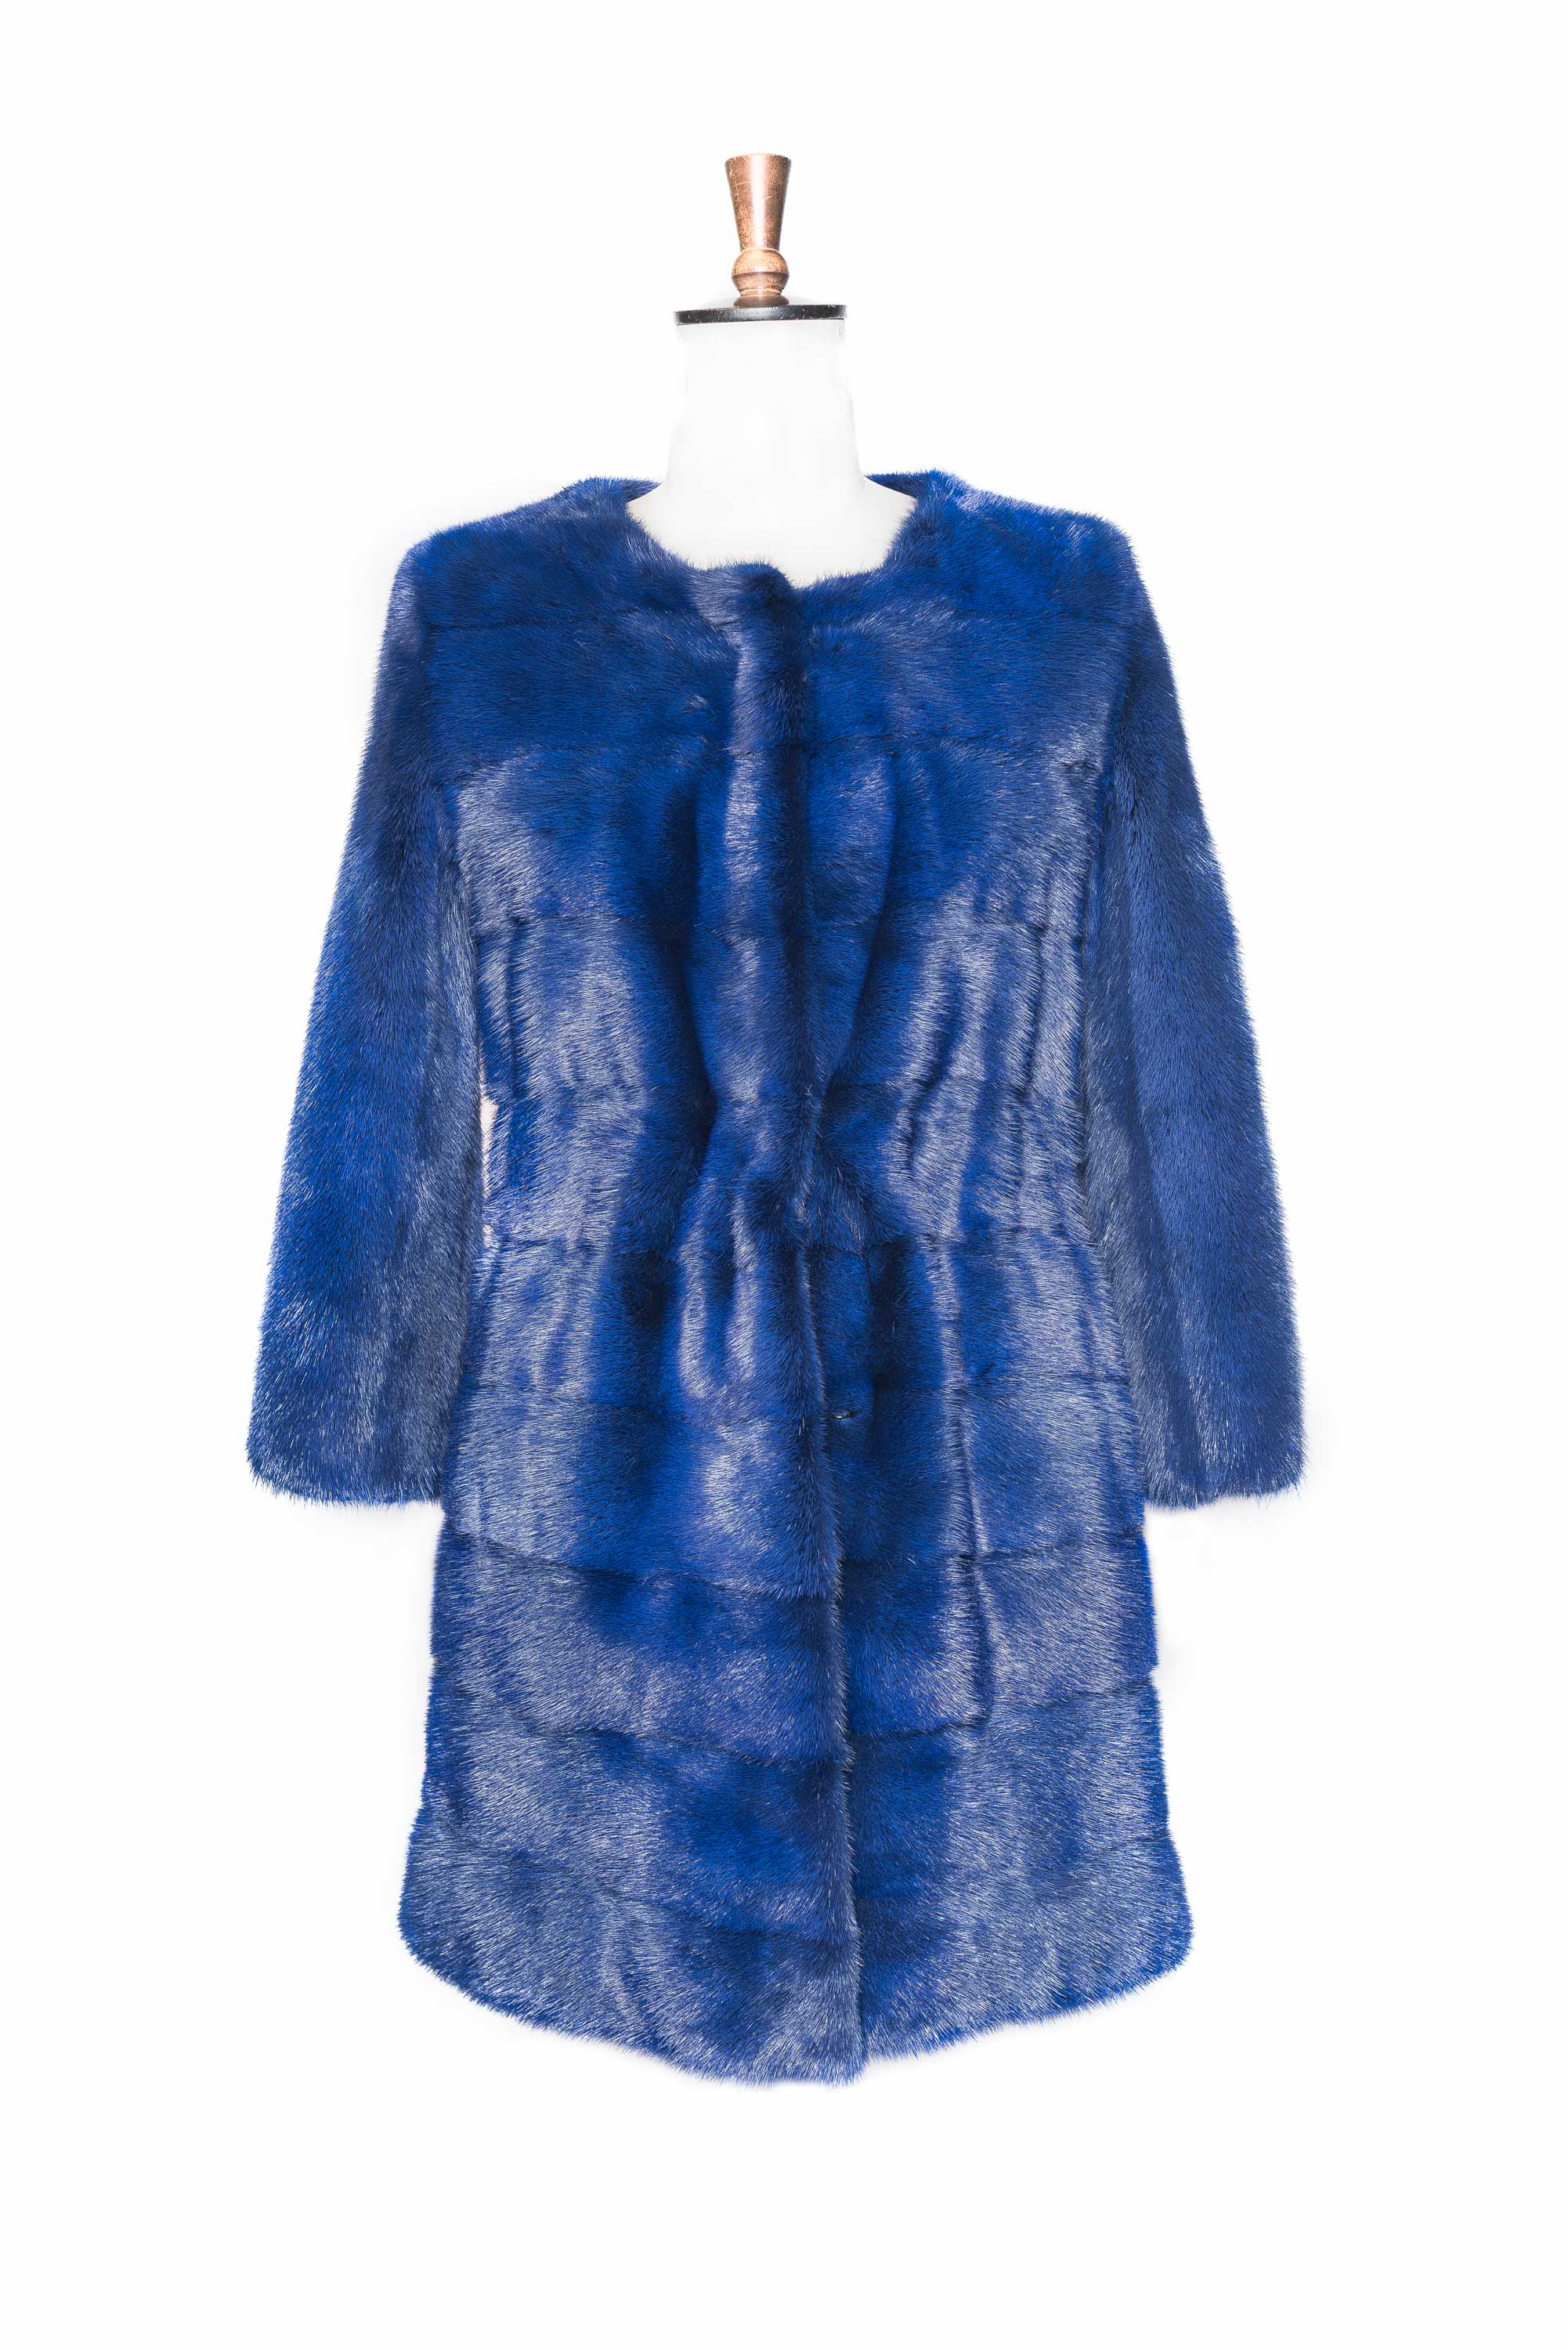 blue fur jacket front side